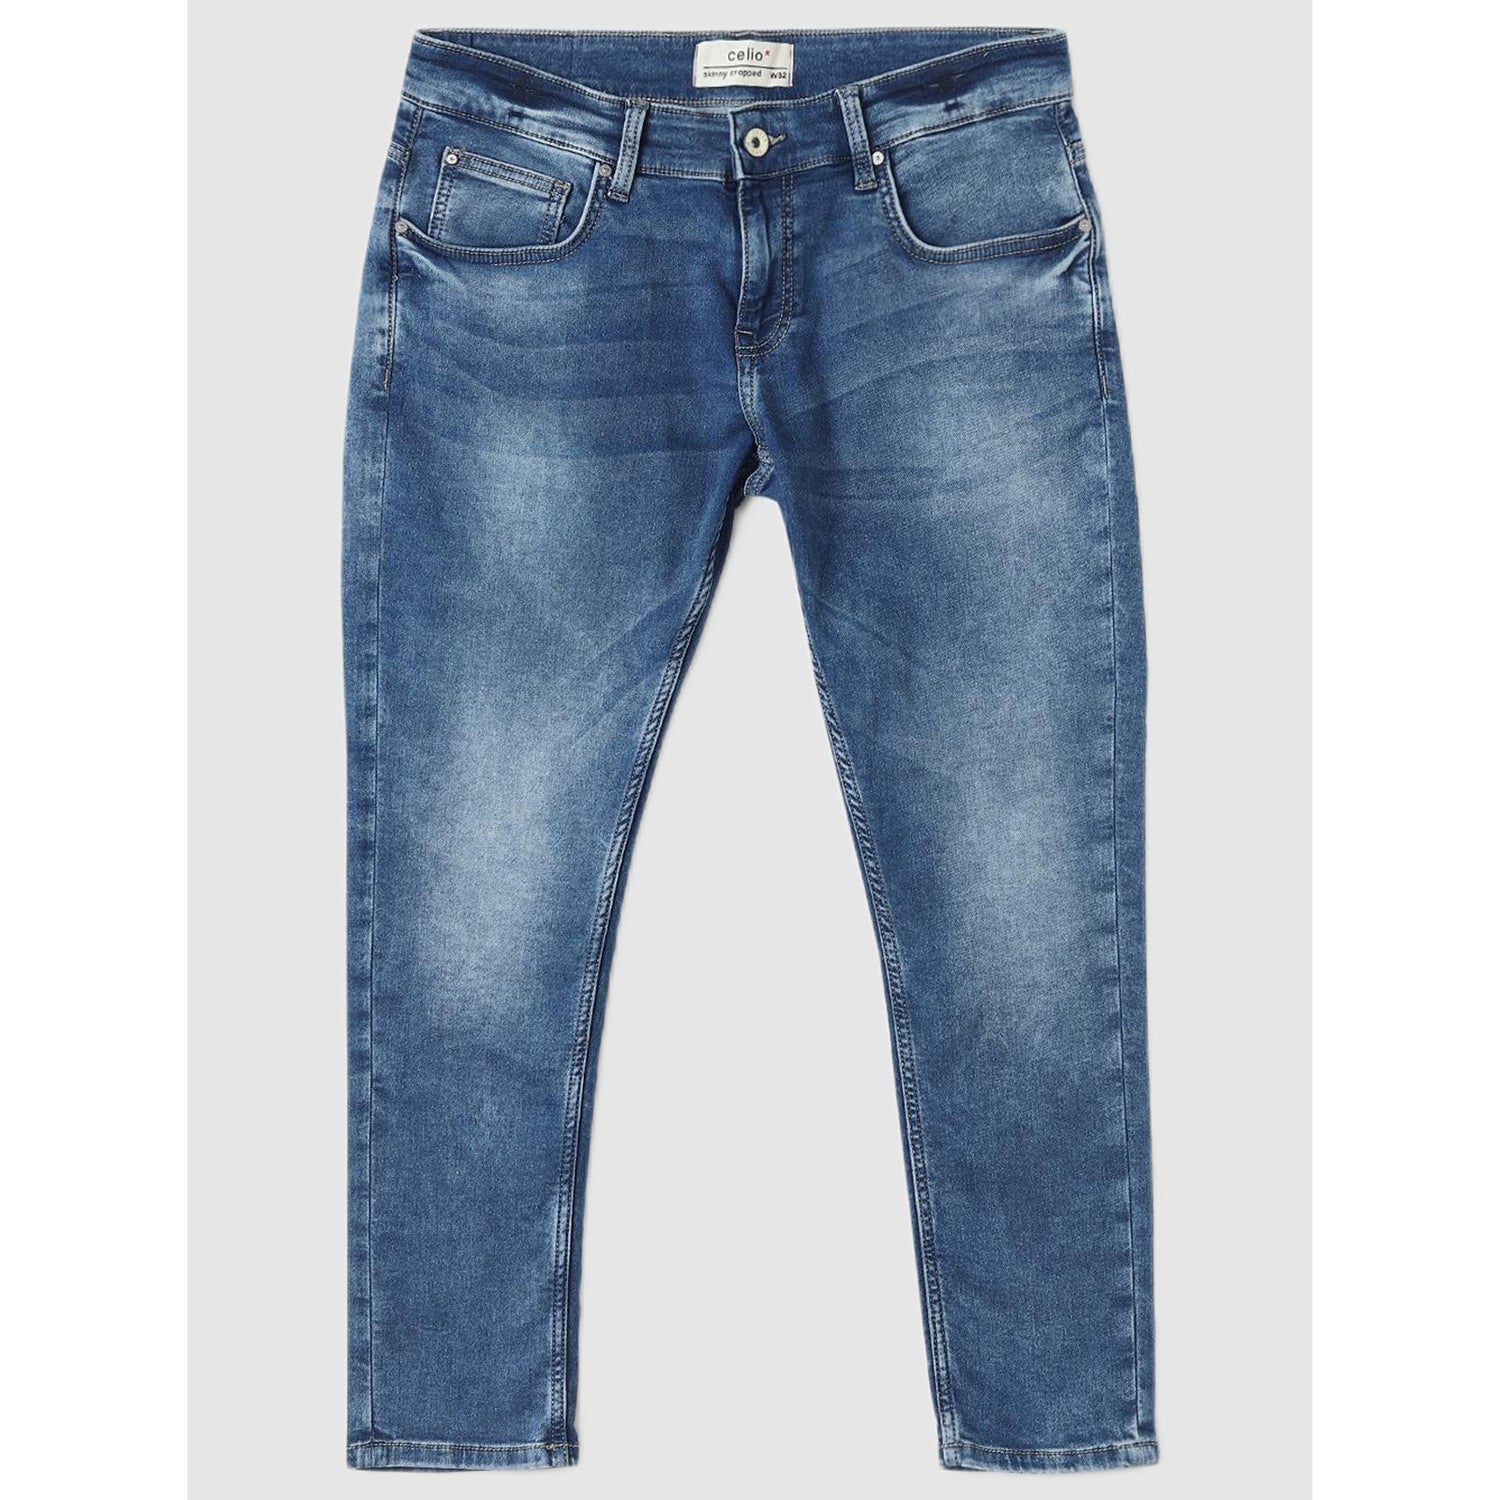 Men's Blue Jeans (Various Sizes)